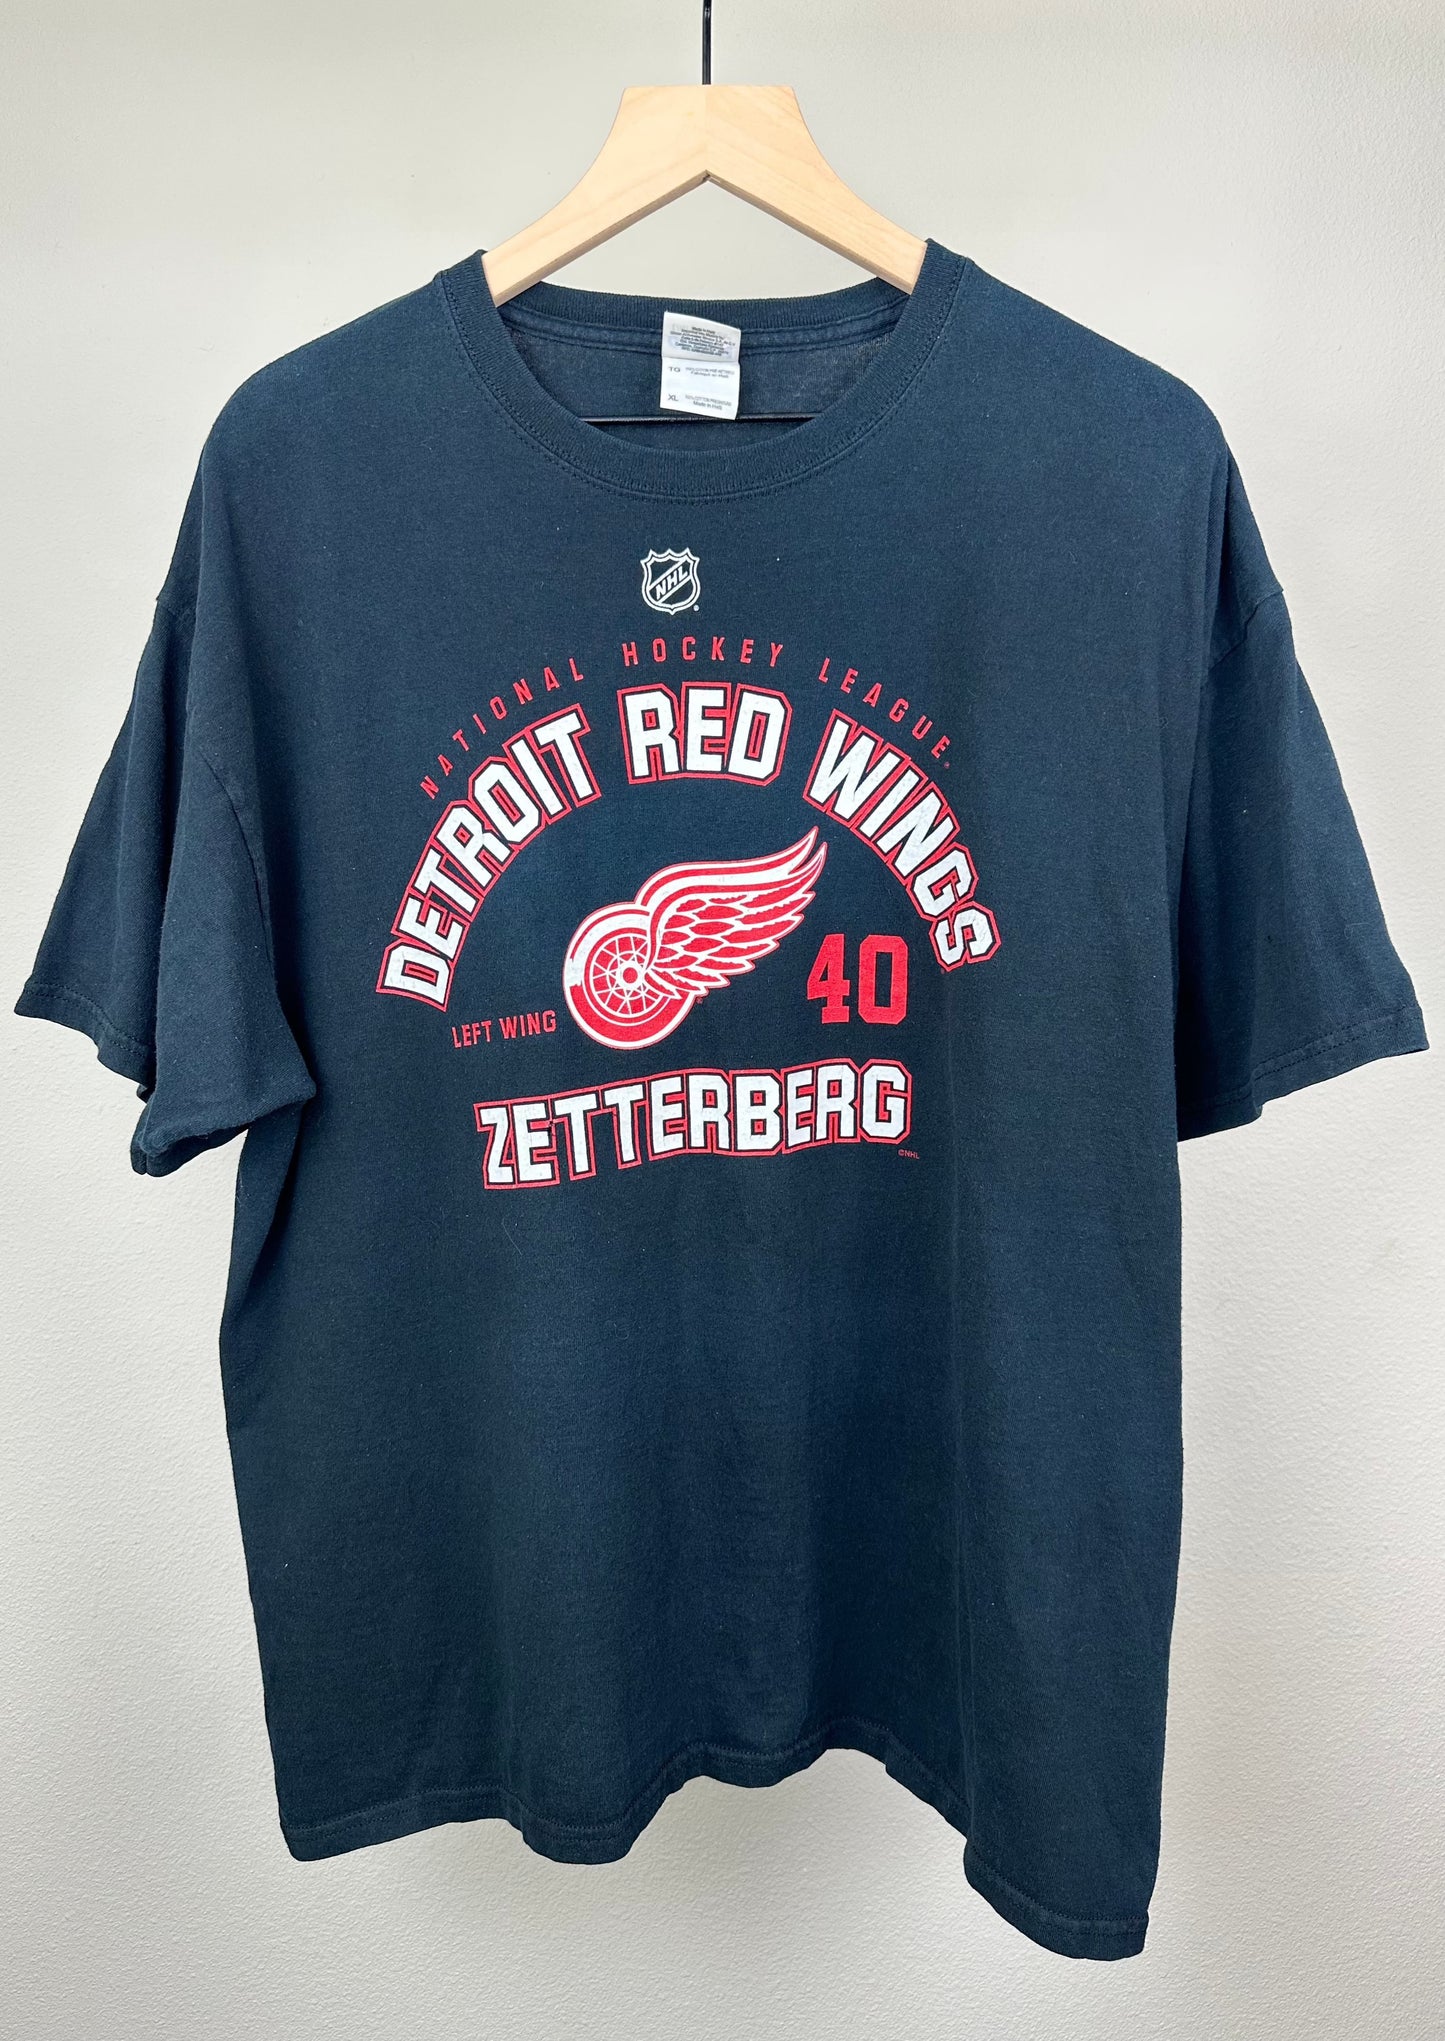 Detroit Red Wings Zetterberg T-Shirt